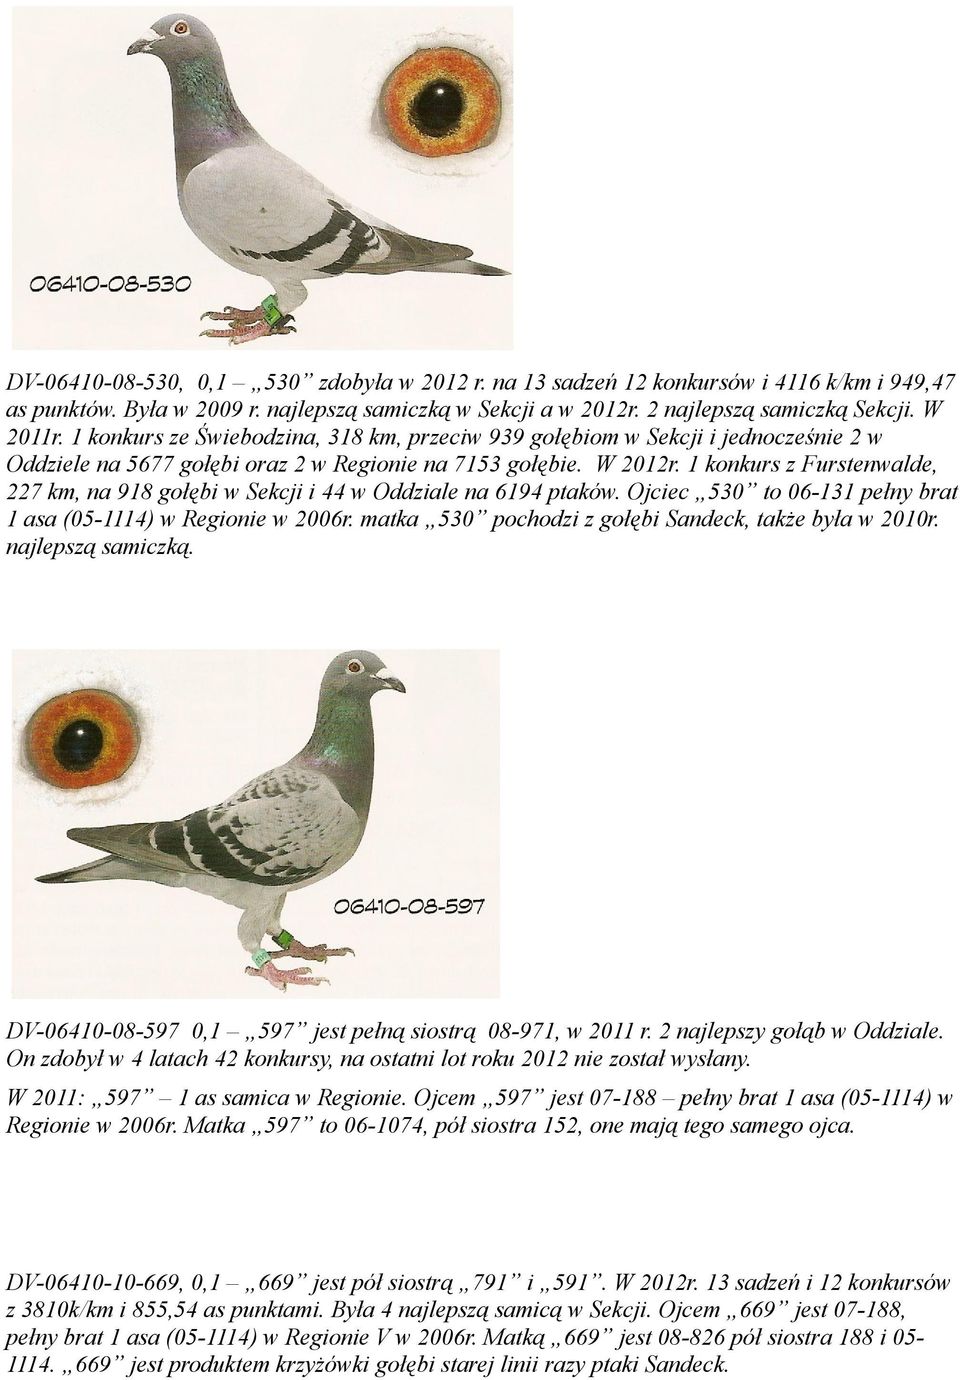 konkurs z Furstenwalde, 227 km, na 98 gołębi w Sekcji i 44 w Oddziale na 694 ptaków. Ojciec 530 to 06-3 pełny brat asa (05-4) w Regionie w 2006r.